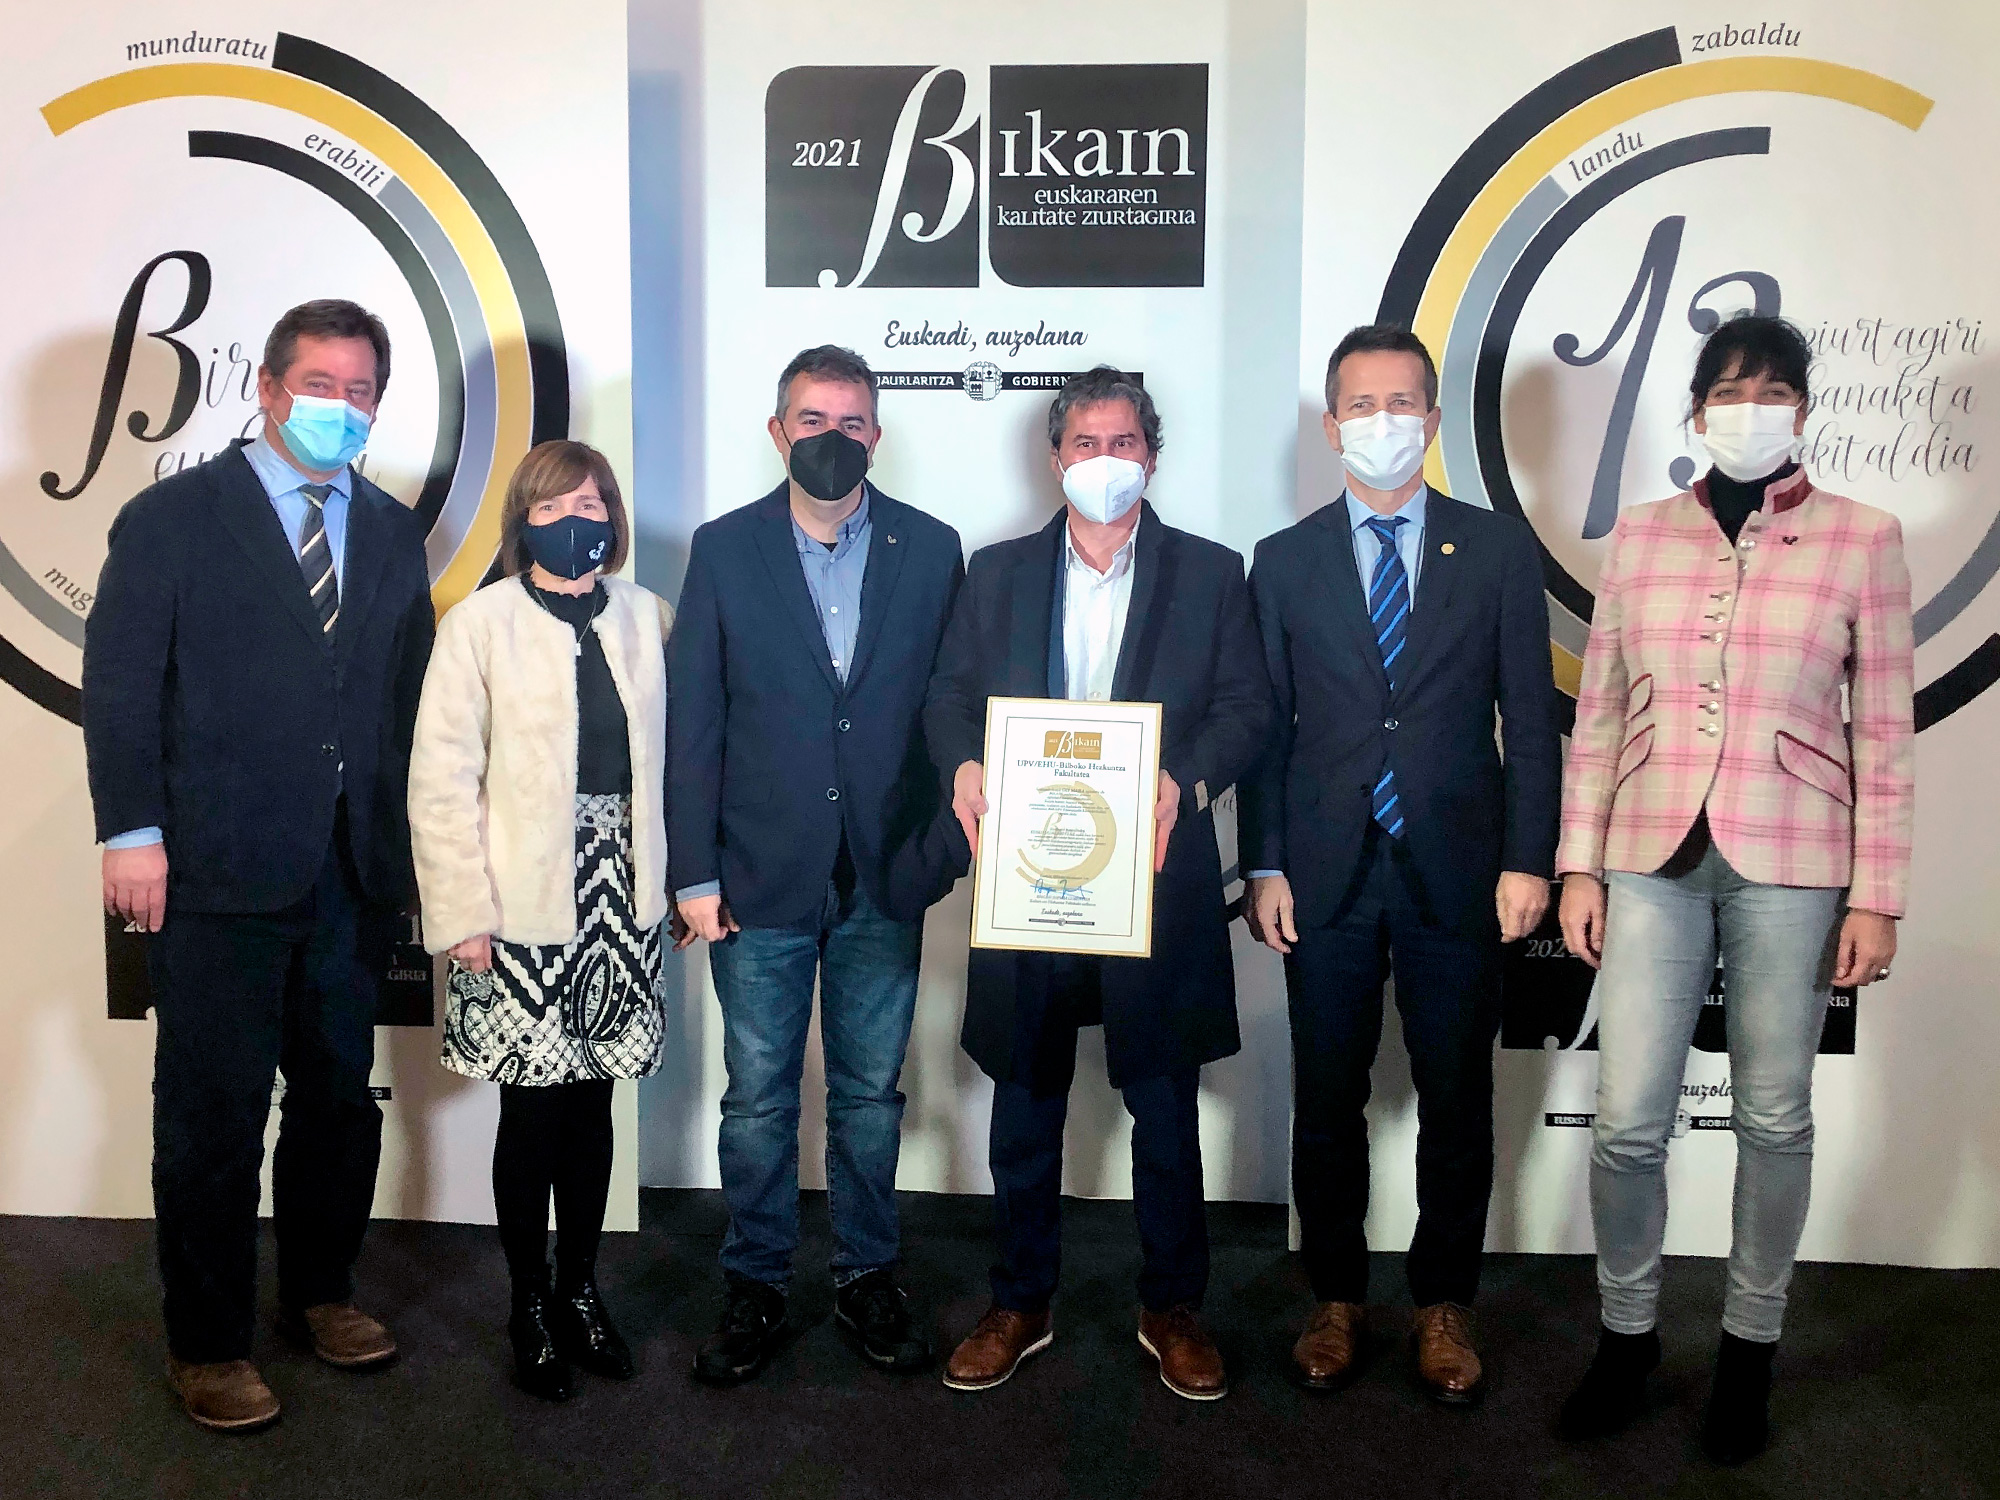 La Facultad de Educación de Bilbao recibe el certificado Bikain de Calidad de gestión del Euskera